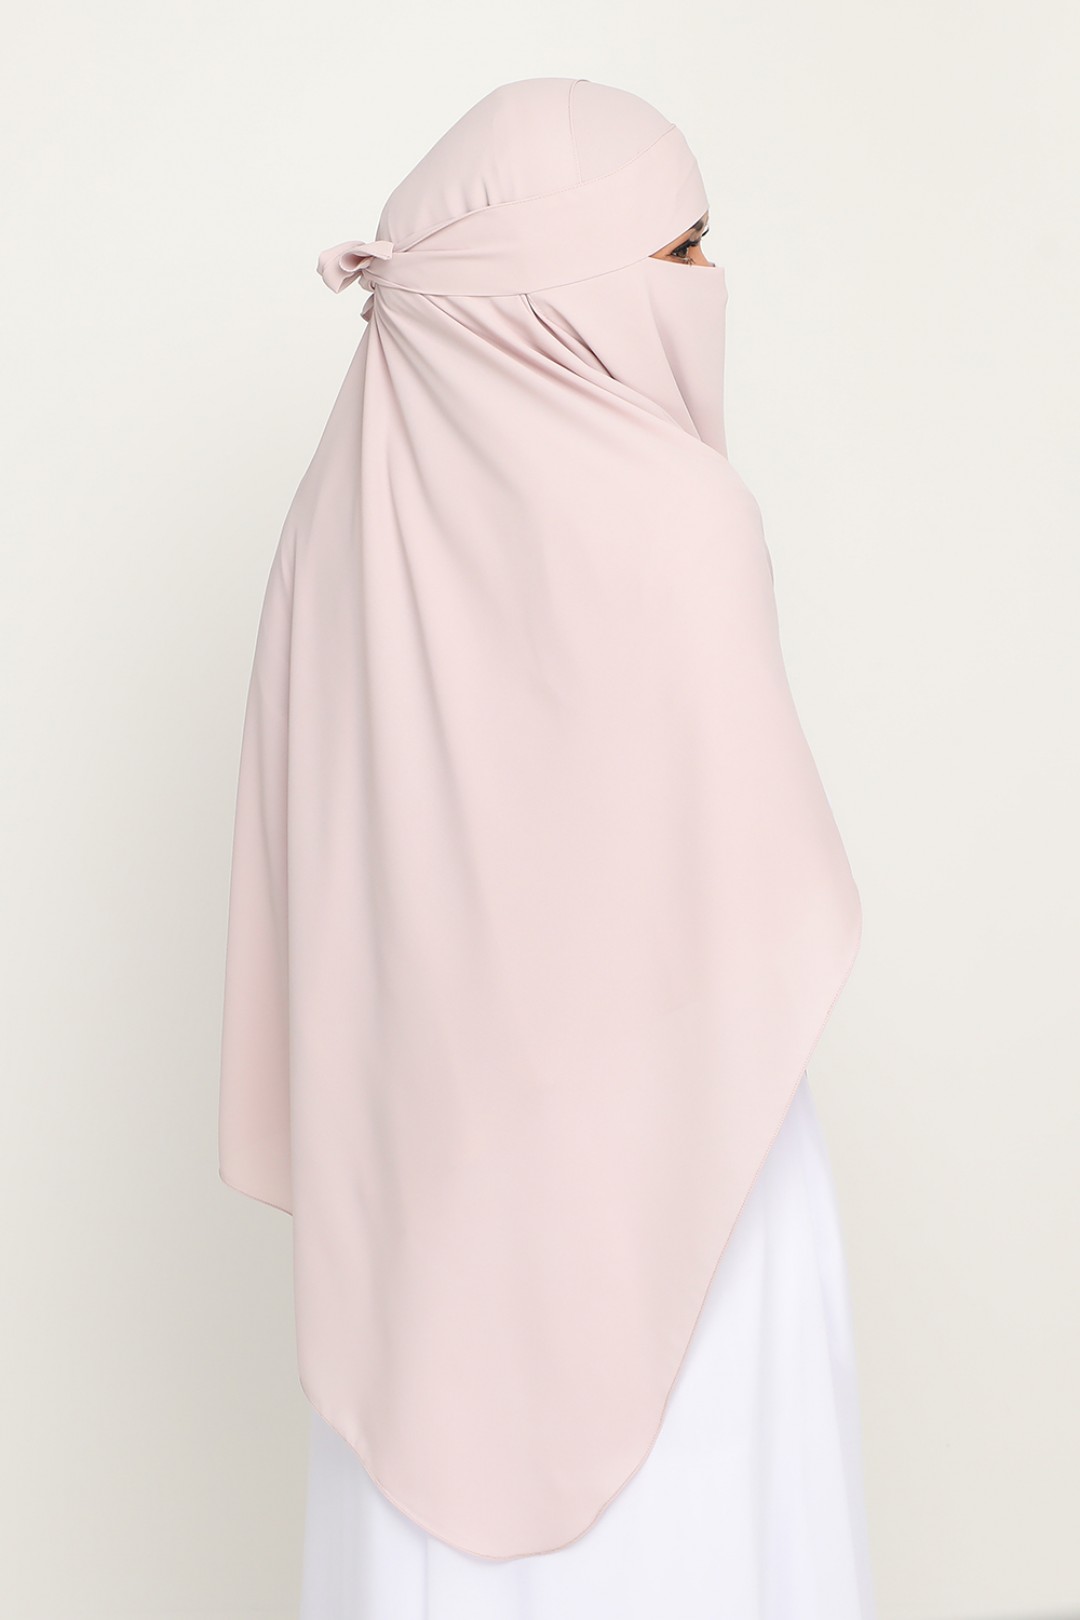 Niqab Pastel Pink